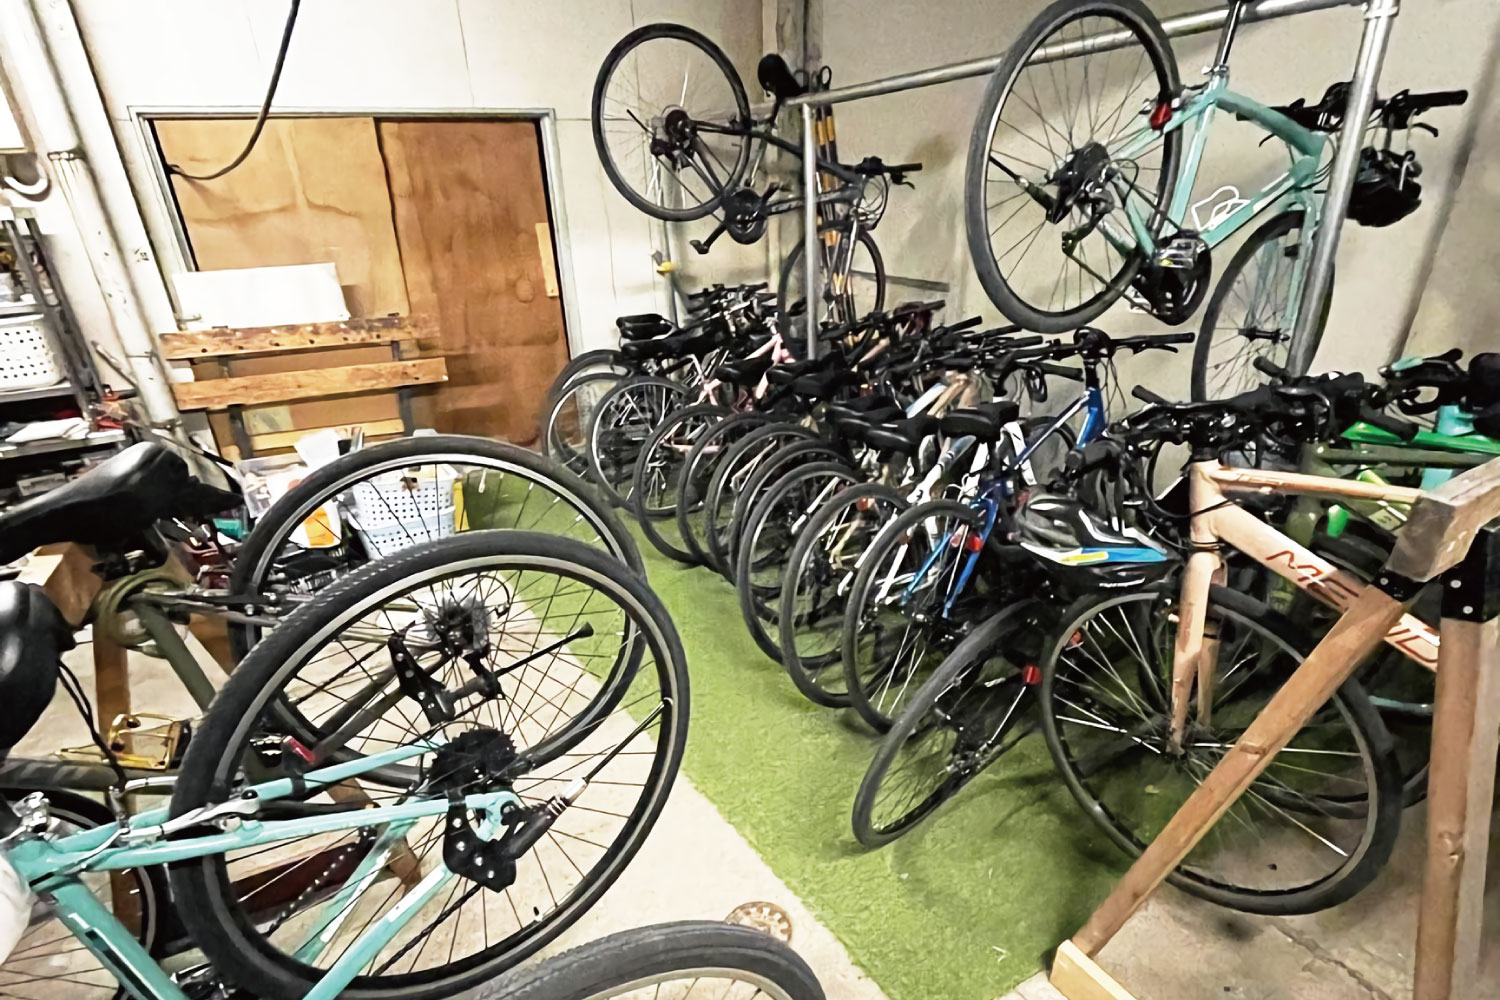 Indoor bicycle parking lot